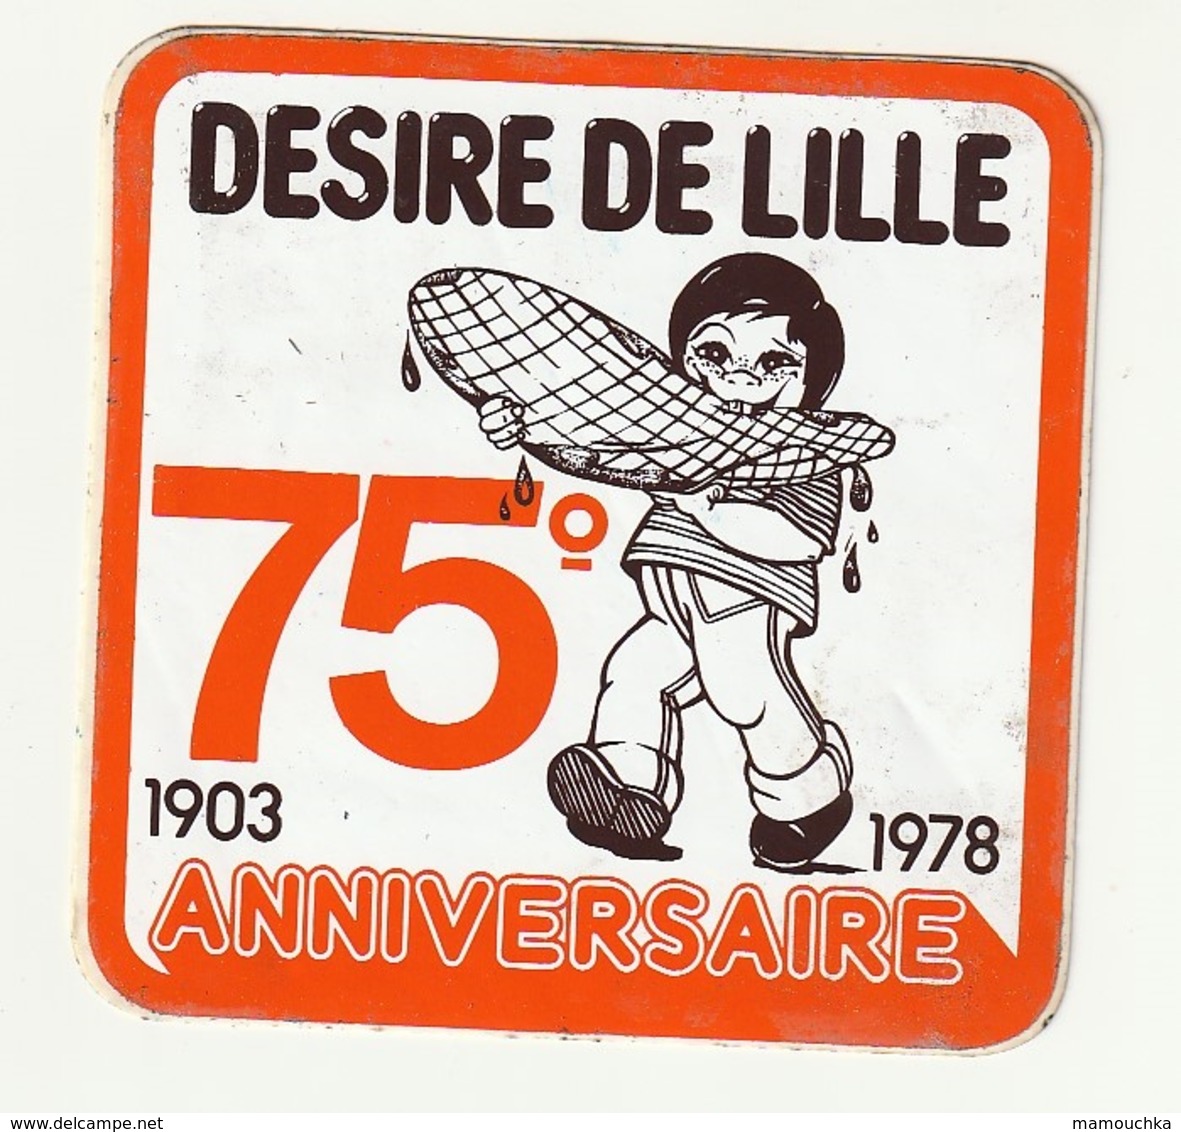 Autocollant Sticker Desire DE LILLE 75 ° Anniversaire 1903 - 1978 - Adesivi